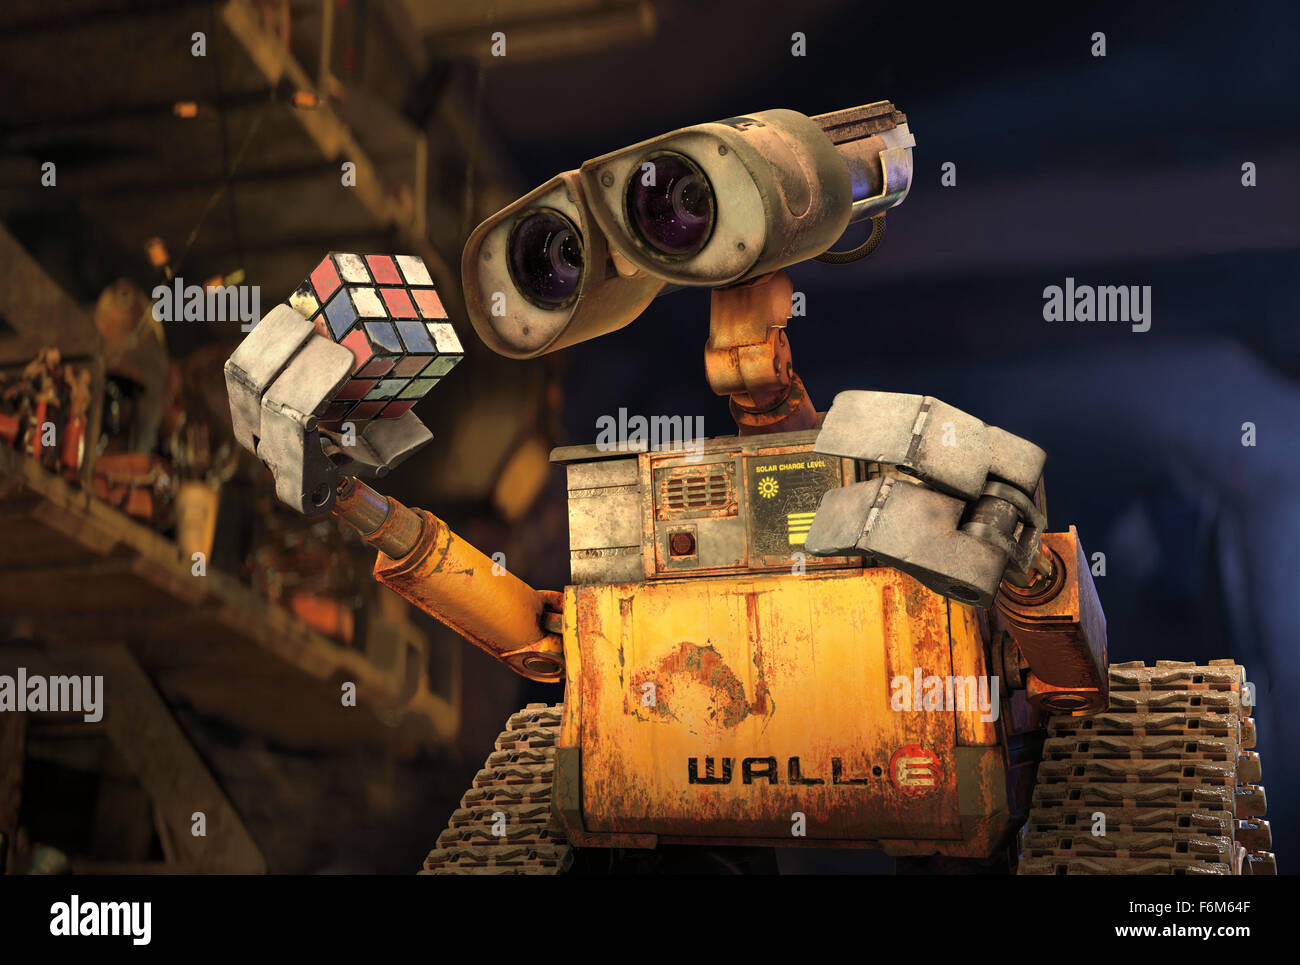 DATE DE SORTIE : 27 juin 2008. Titre du film : WALL-E. STUDIO : Pixar  Animation Studios. Résumé : Dans un futur lointain, un petit robot de  collecte des déchets de l'espace